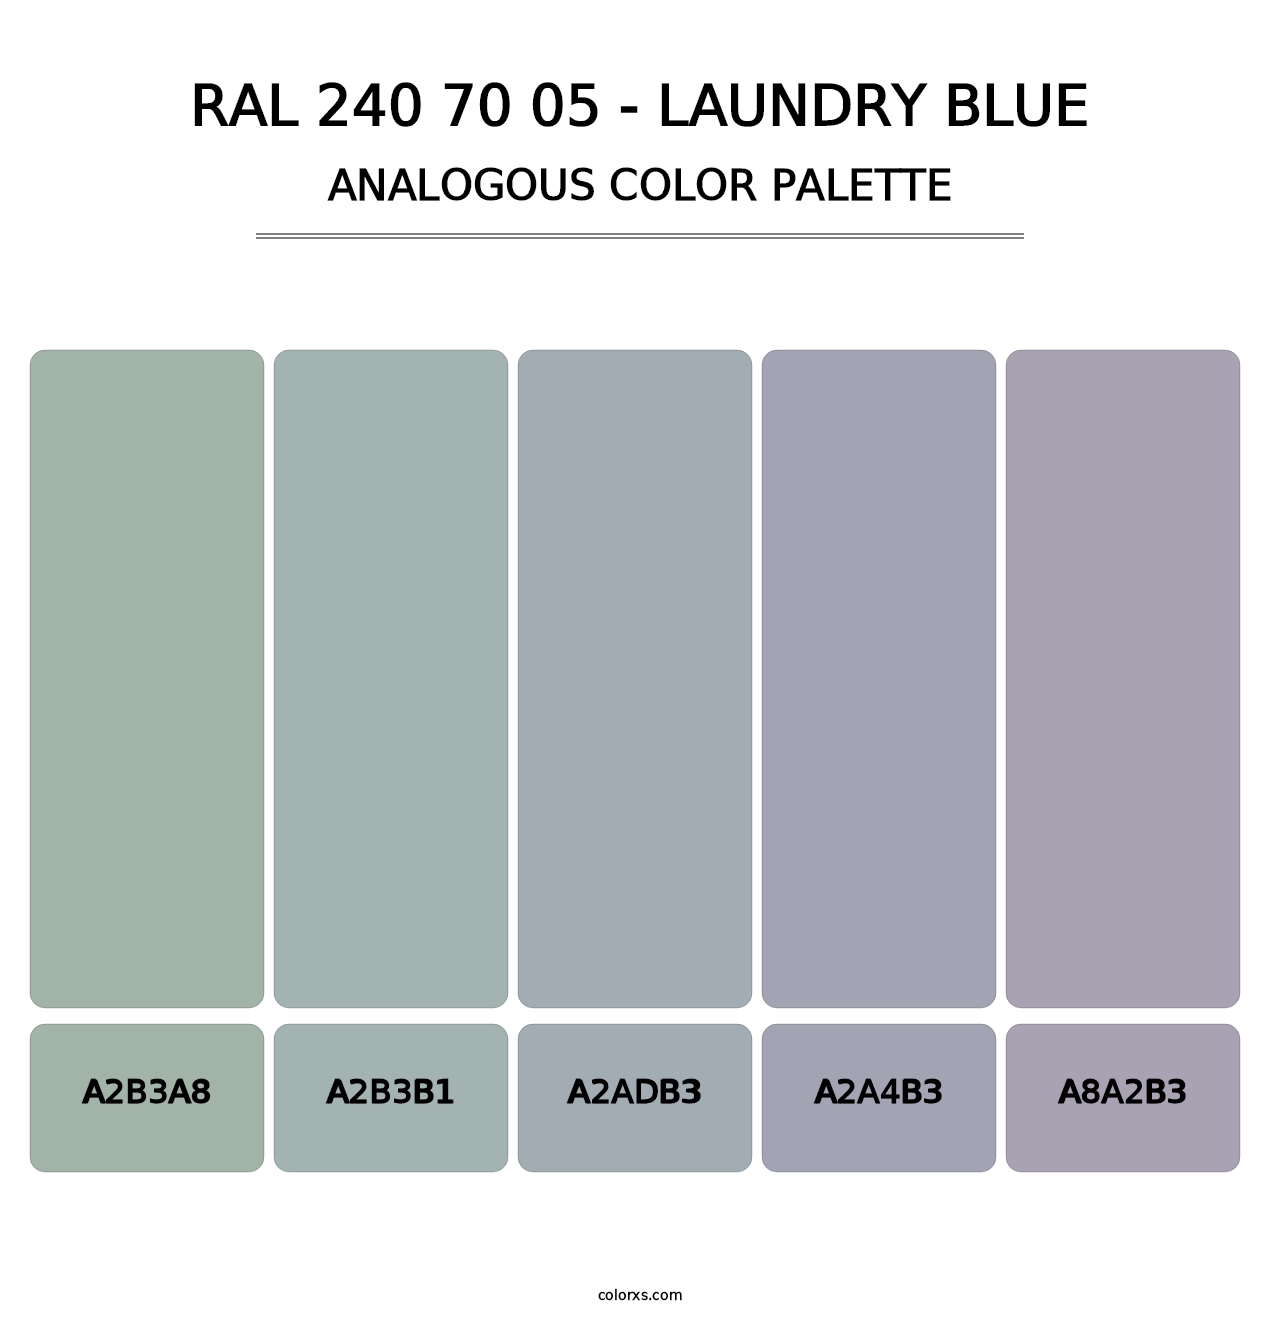 RAL 240 70 05 - Laundry Blue - Analogous Color Palette